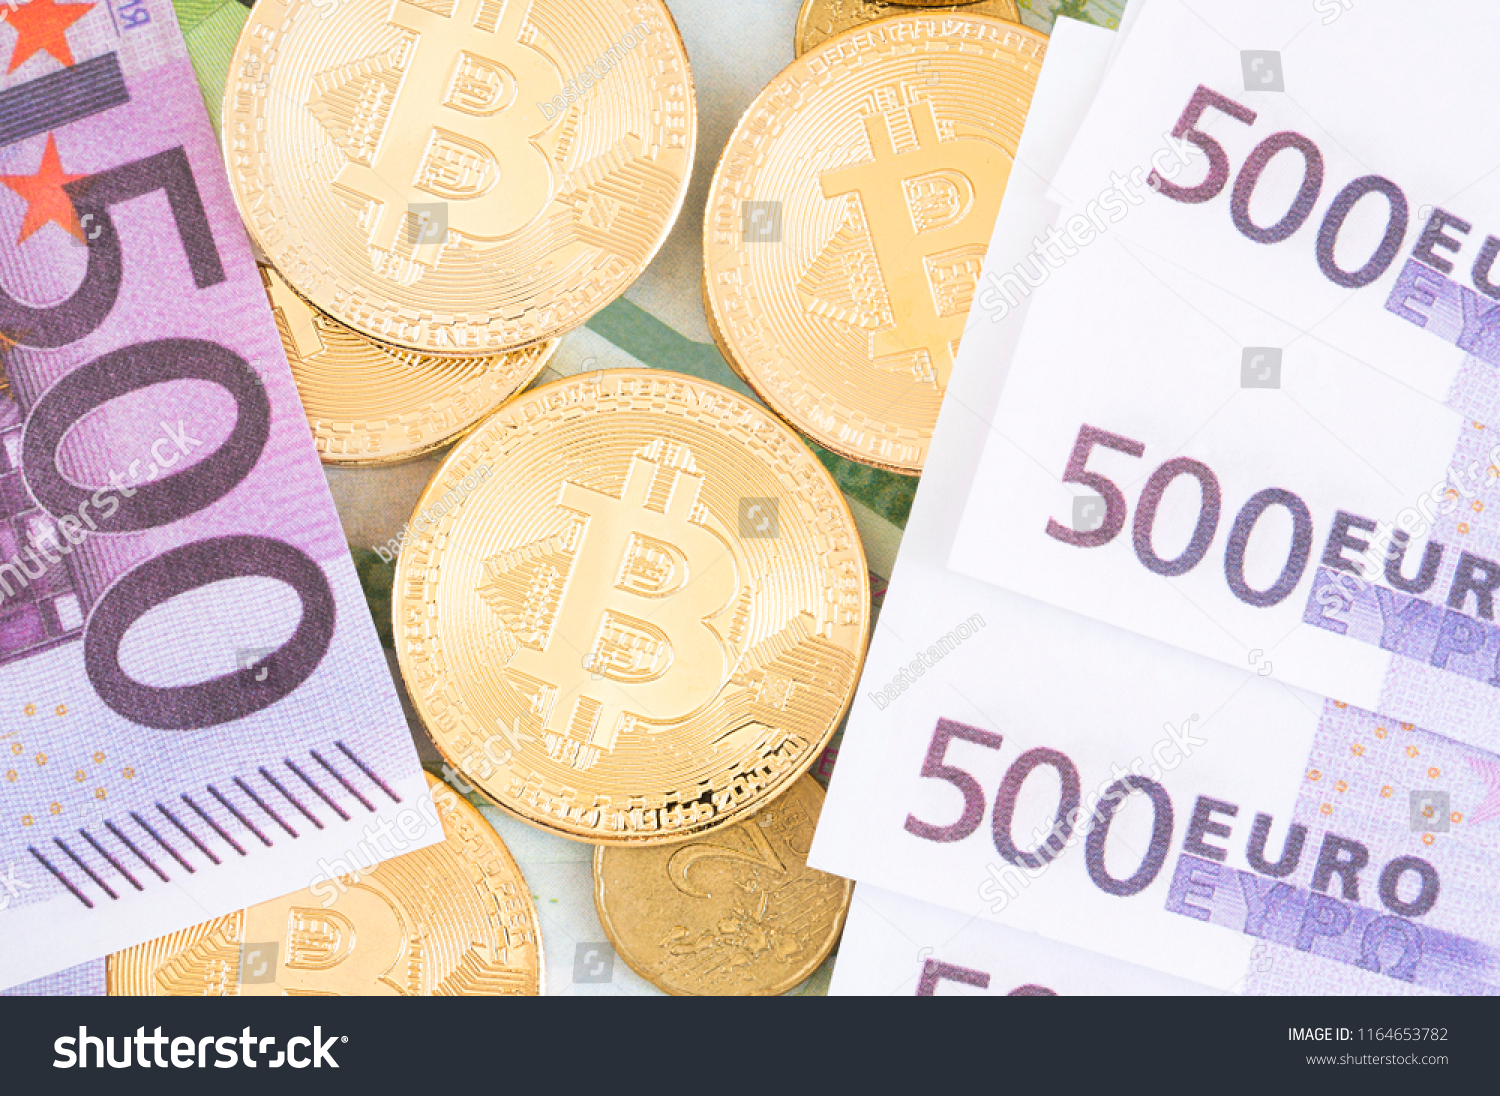 trading bitcoins regno unito